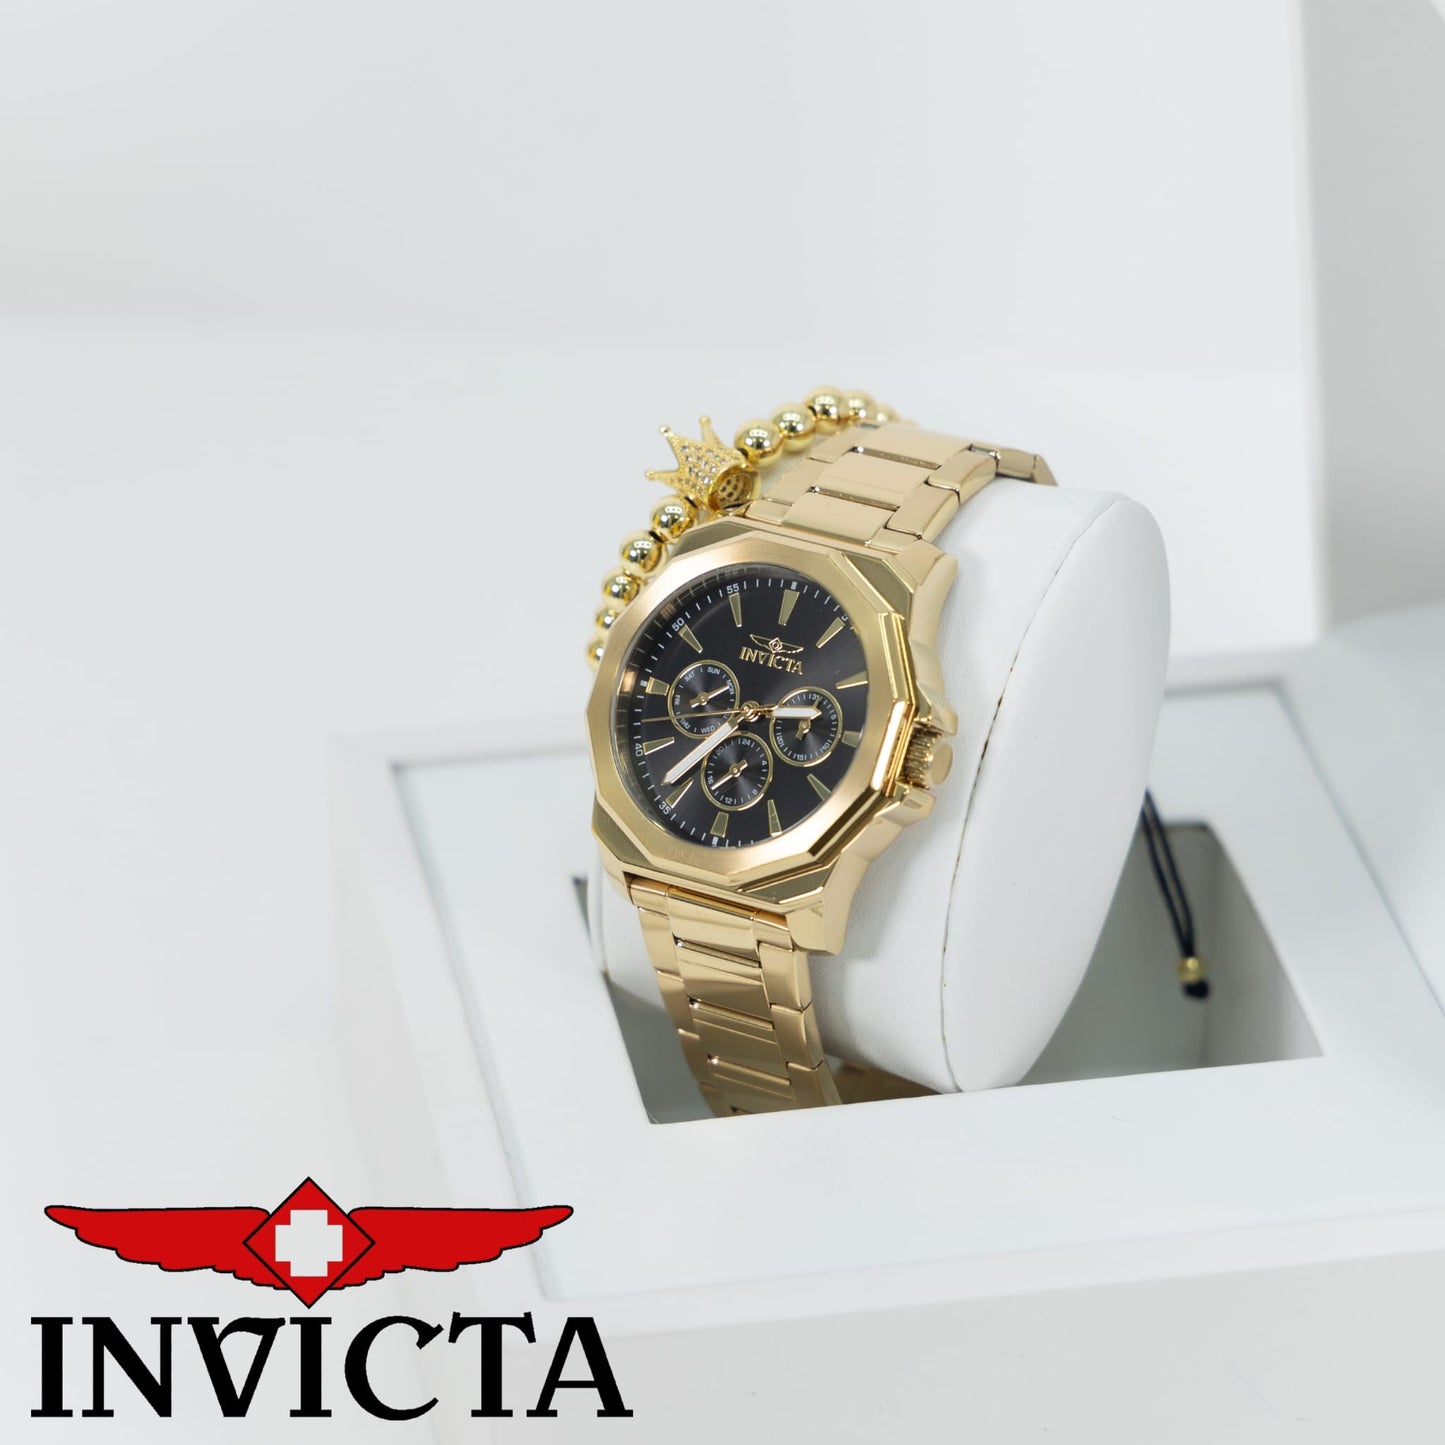 Invicta Speedway Men's Watch - 42mm, Gold Una Pulsera Gratis